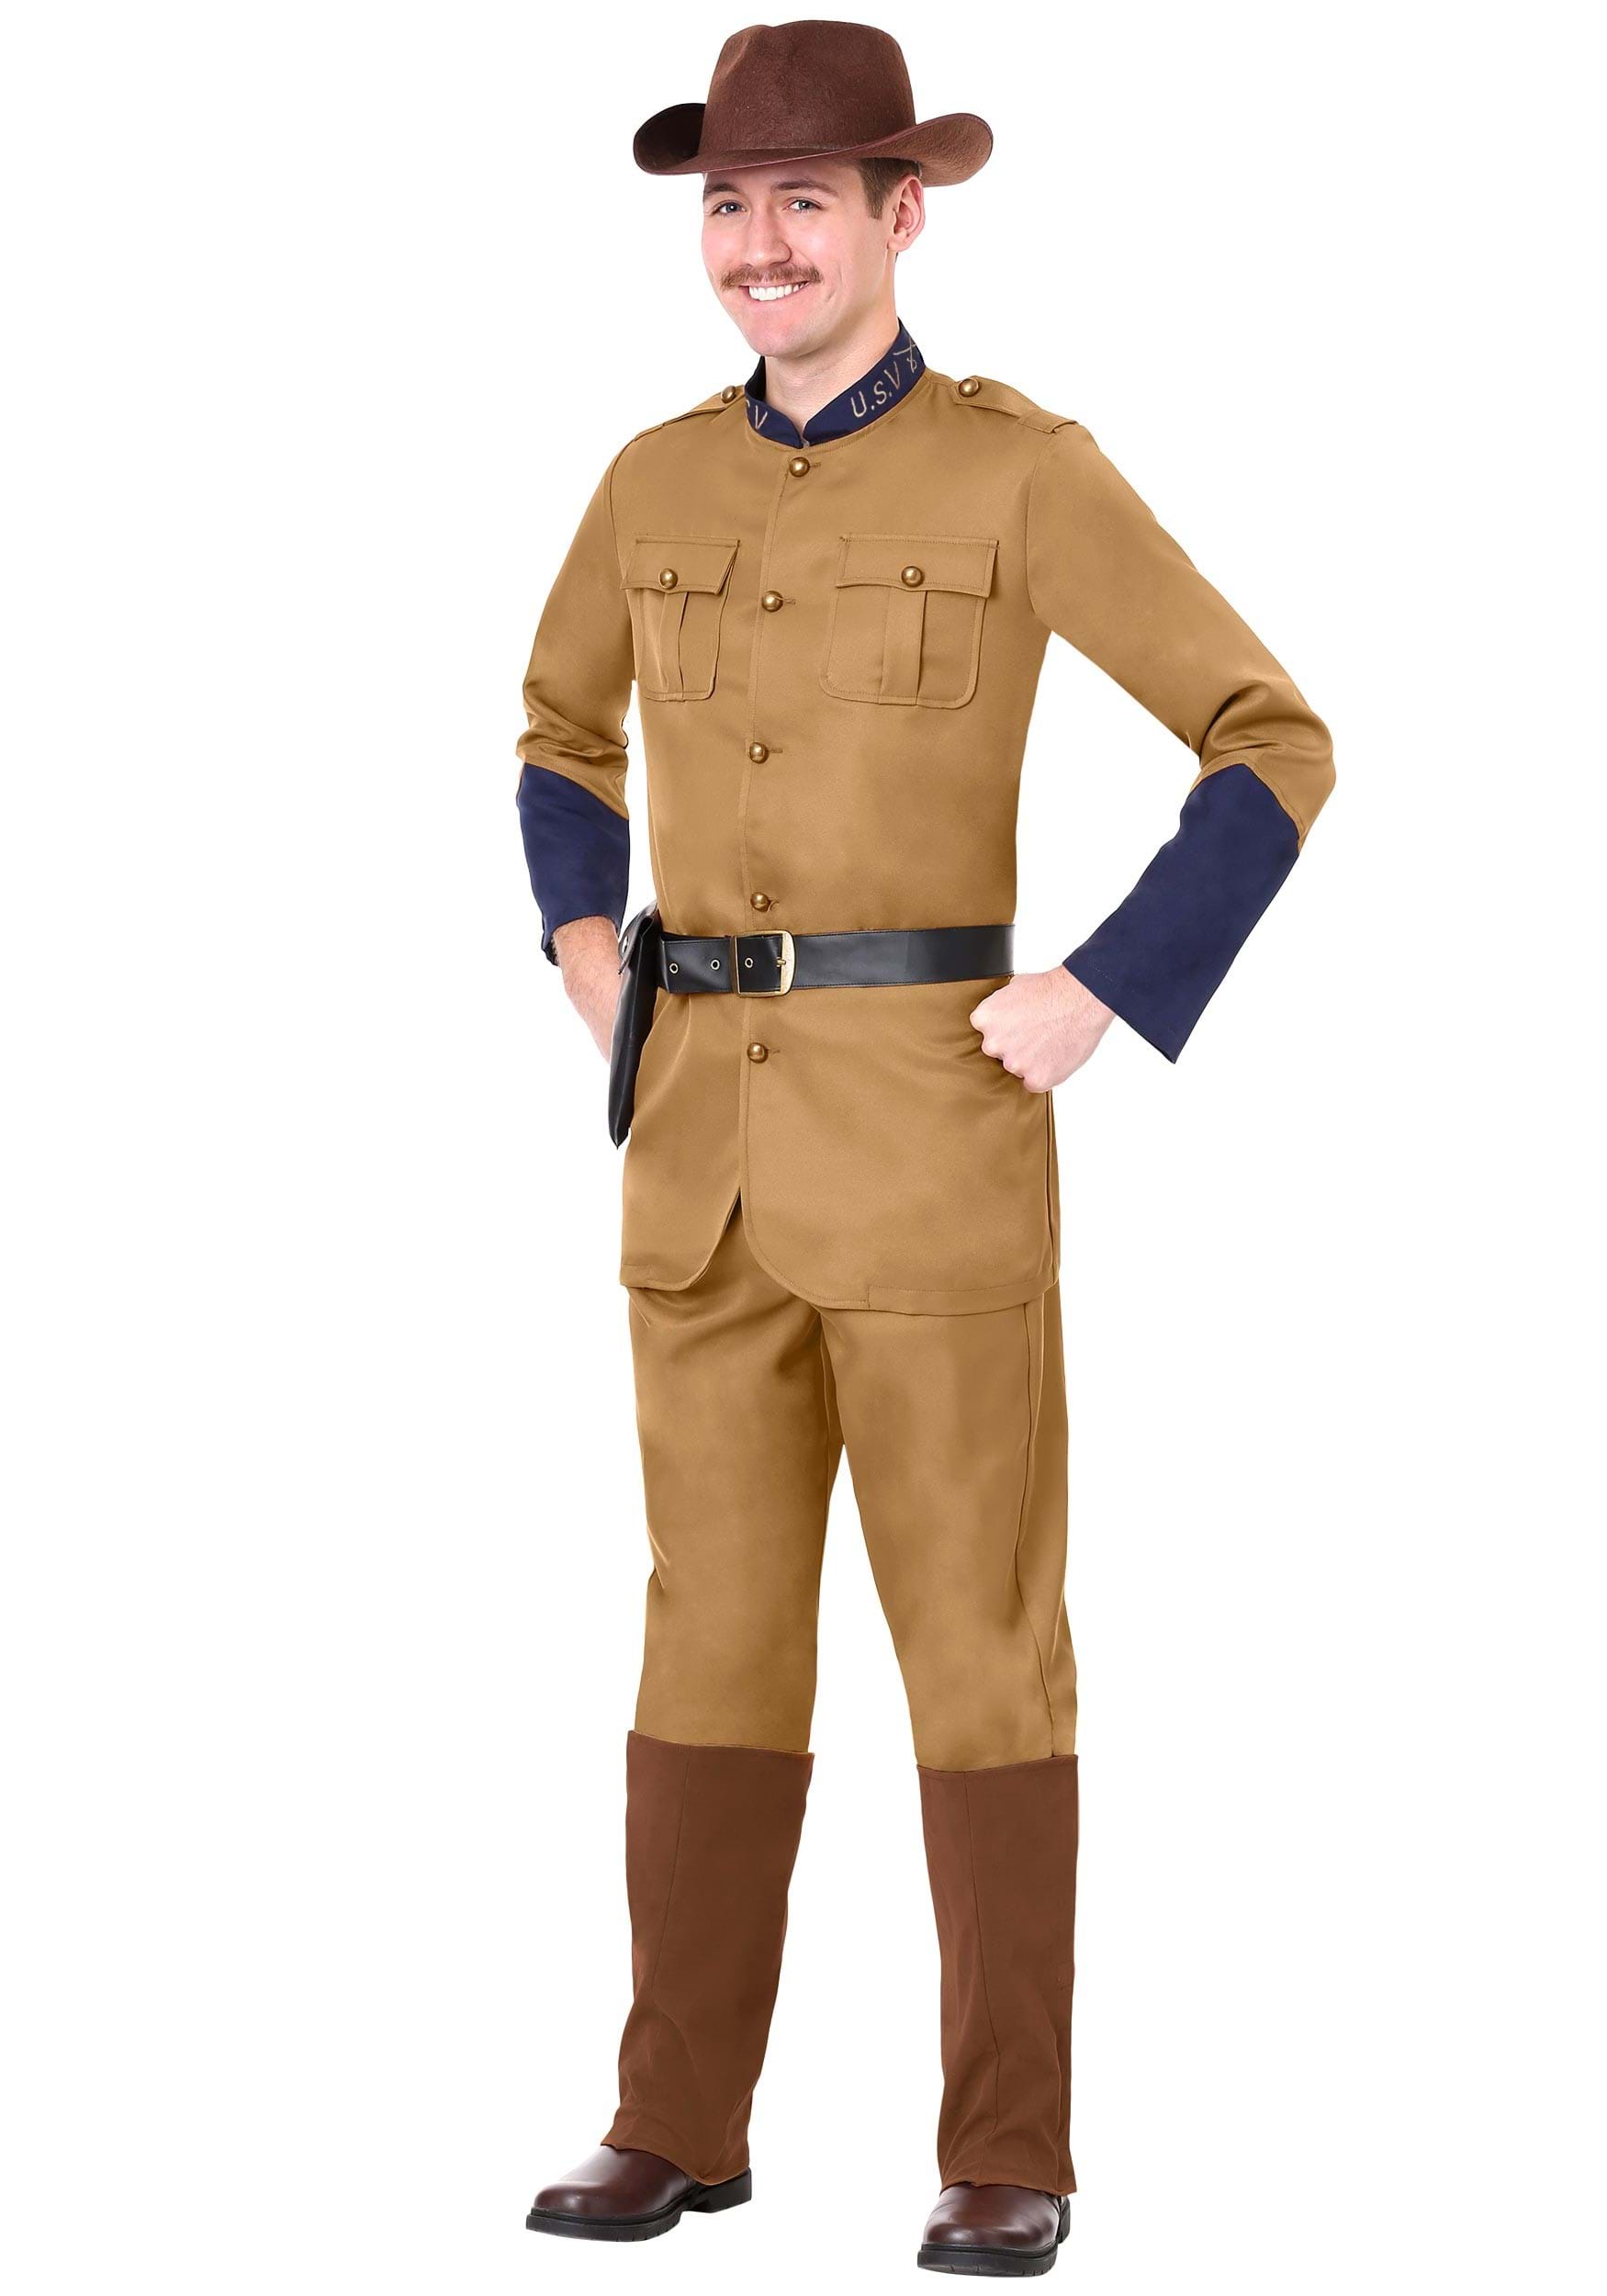 Officer Teddy Roosevelt Costume for Men